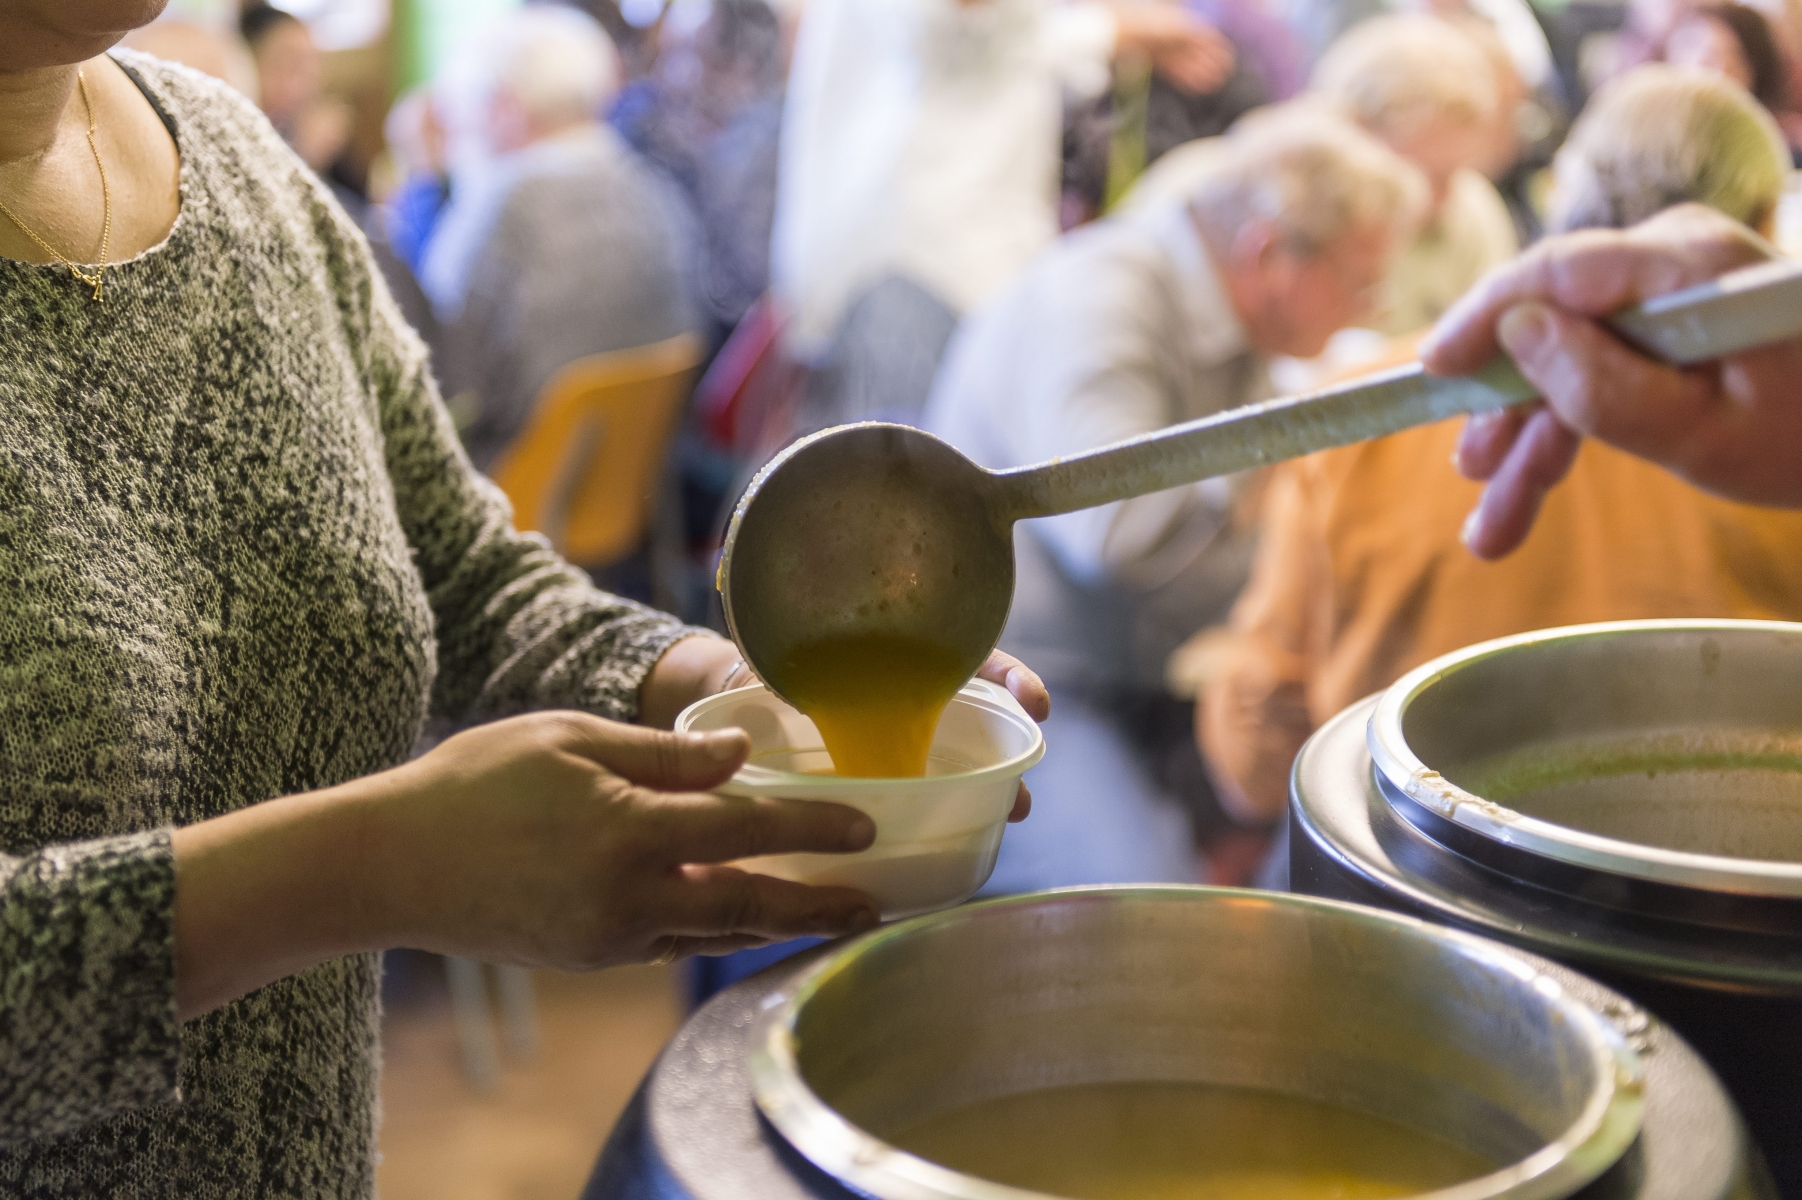 La "soupe au caillou" symbolise le partage et l'ingéniosité de ceux qui n'ont rien.